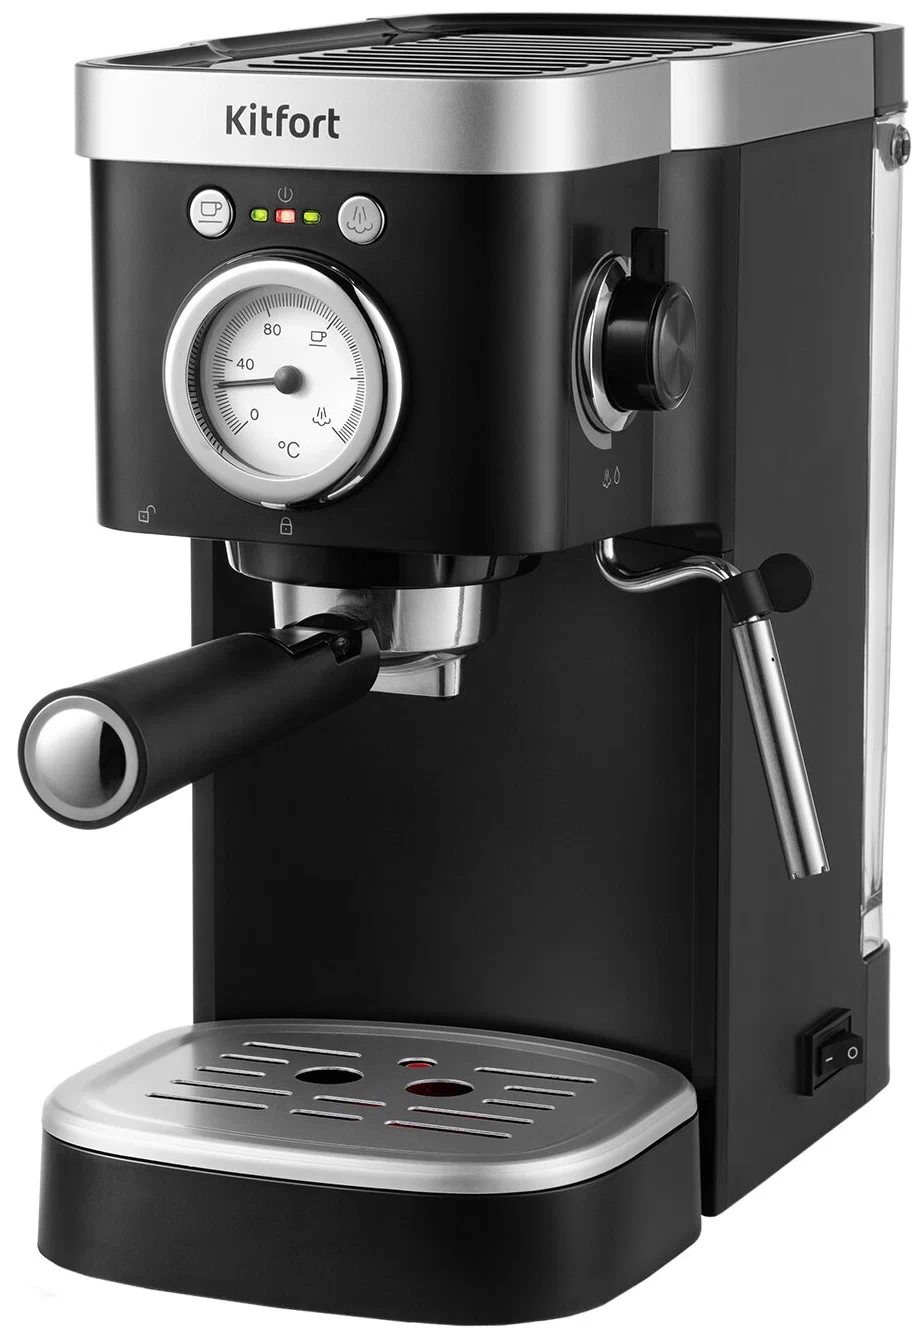 Кофеварка рожковая Kitfort КТ-788, 1.1 кВт, кофе молотый, 1.2 л, серебристый/черный (КТ-788)